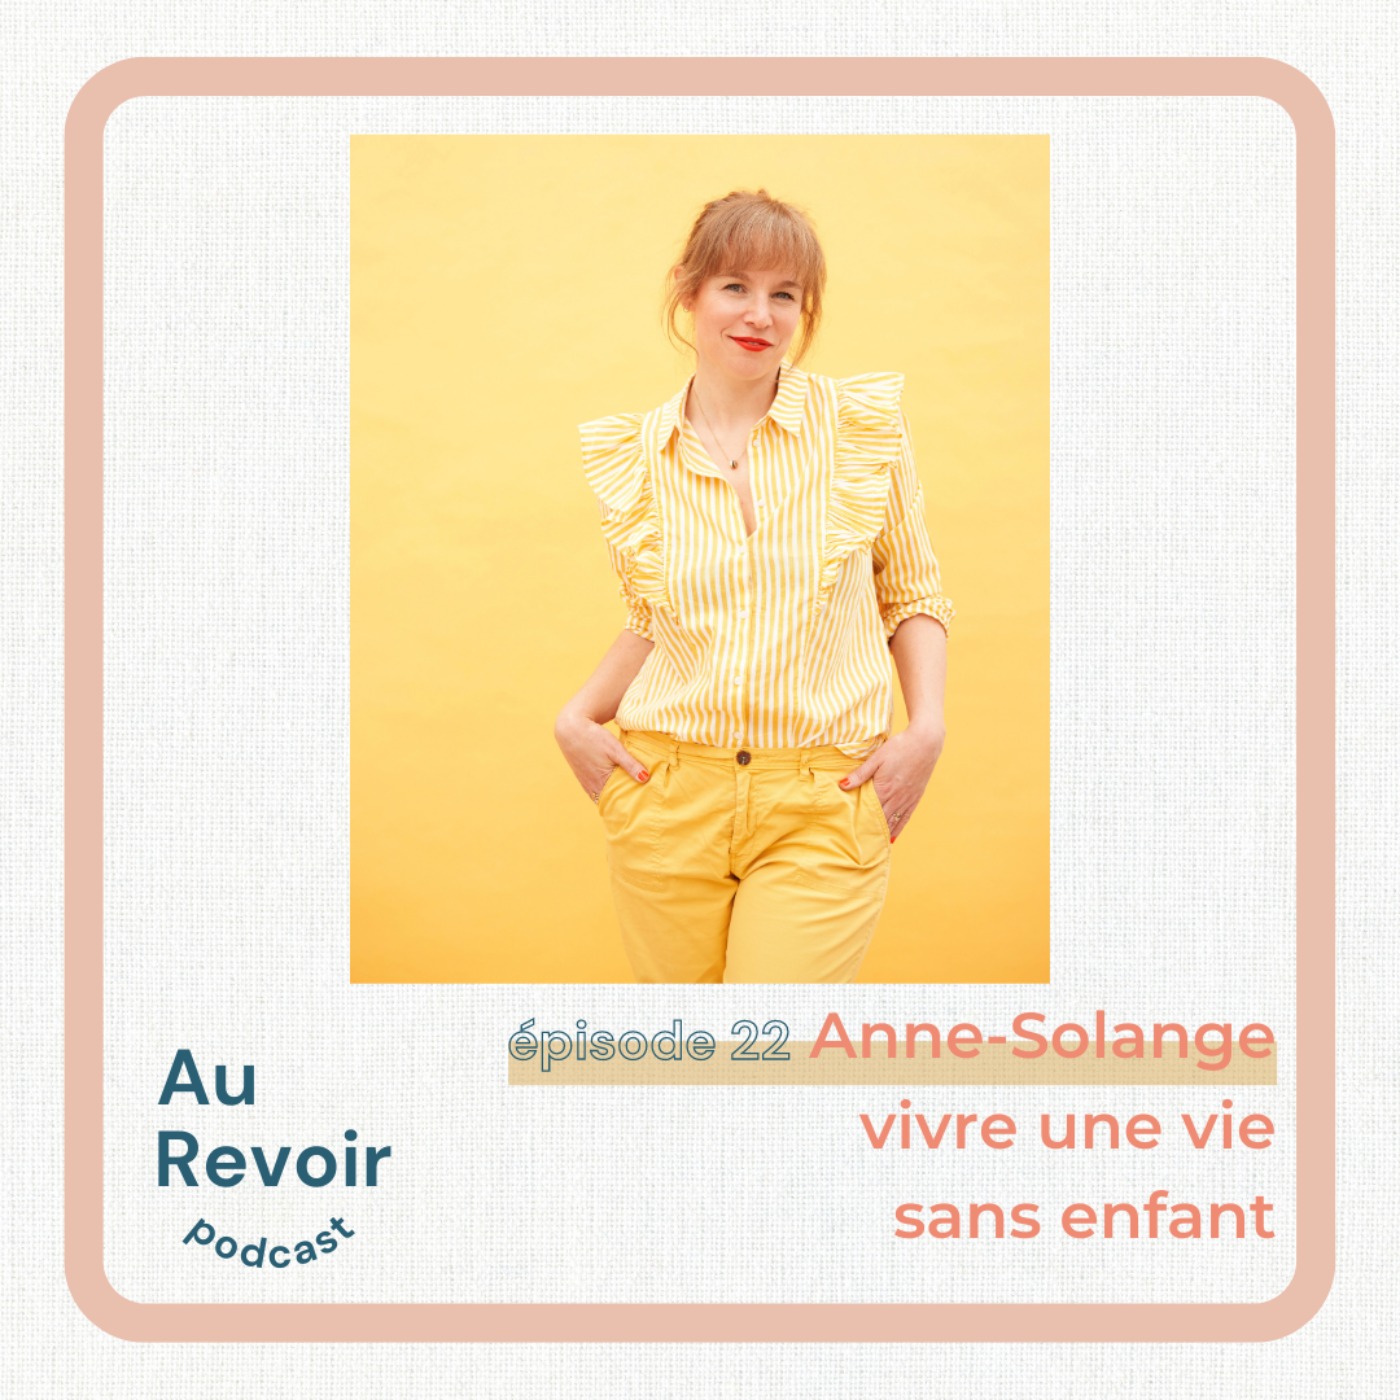 #22 Anne-Solange : ”vivre une vie sans enfant”